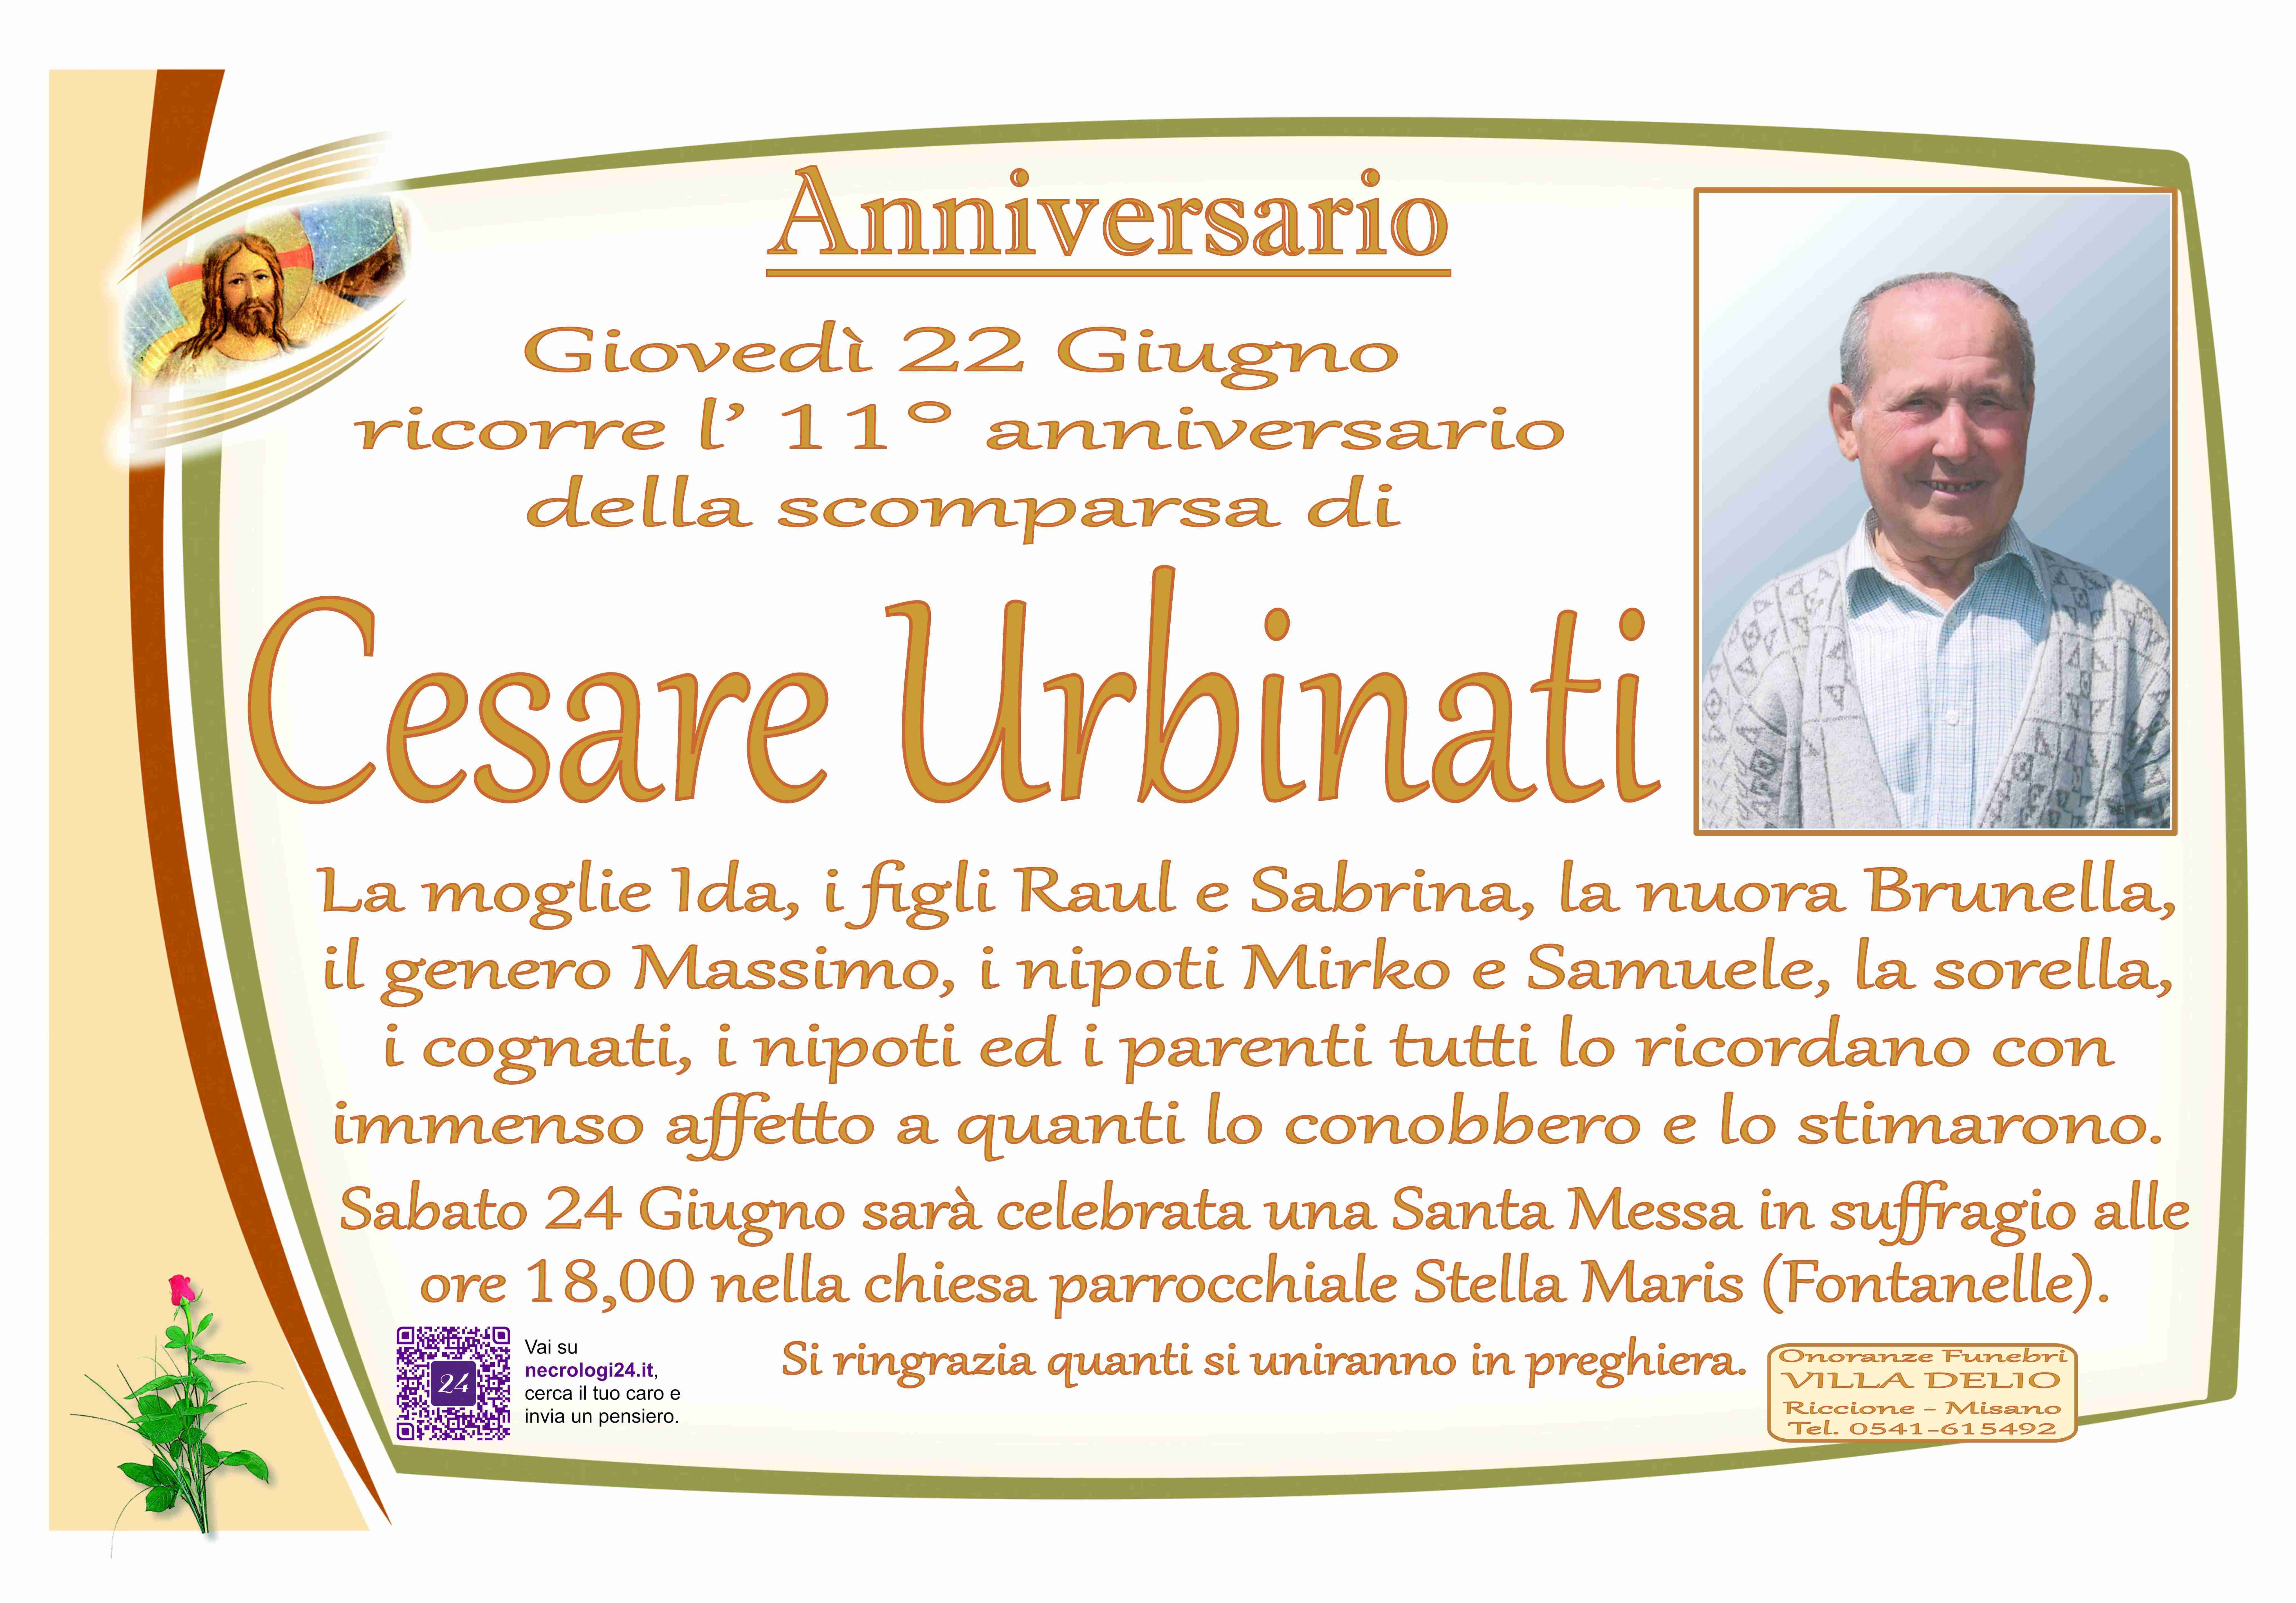 Cesare Urbinati